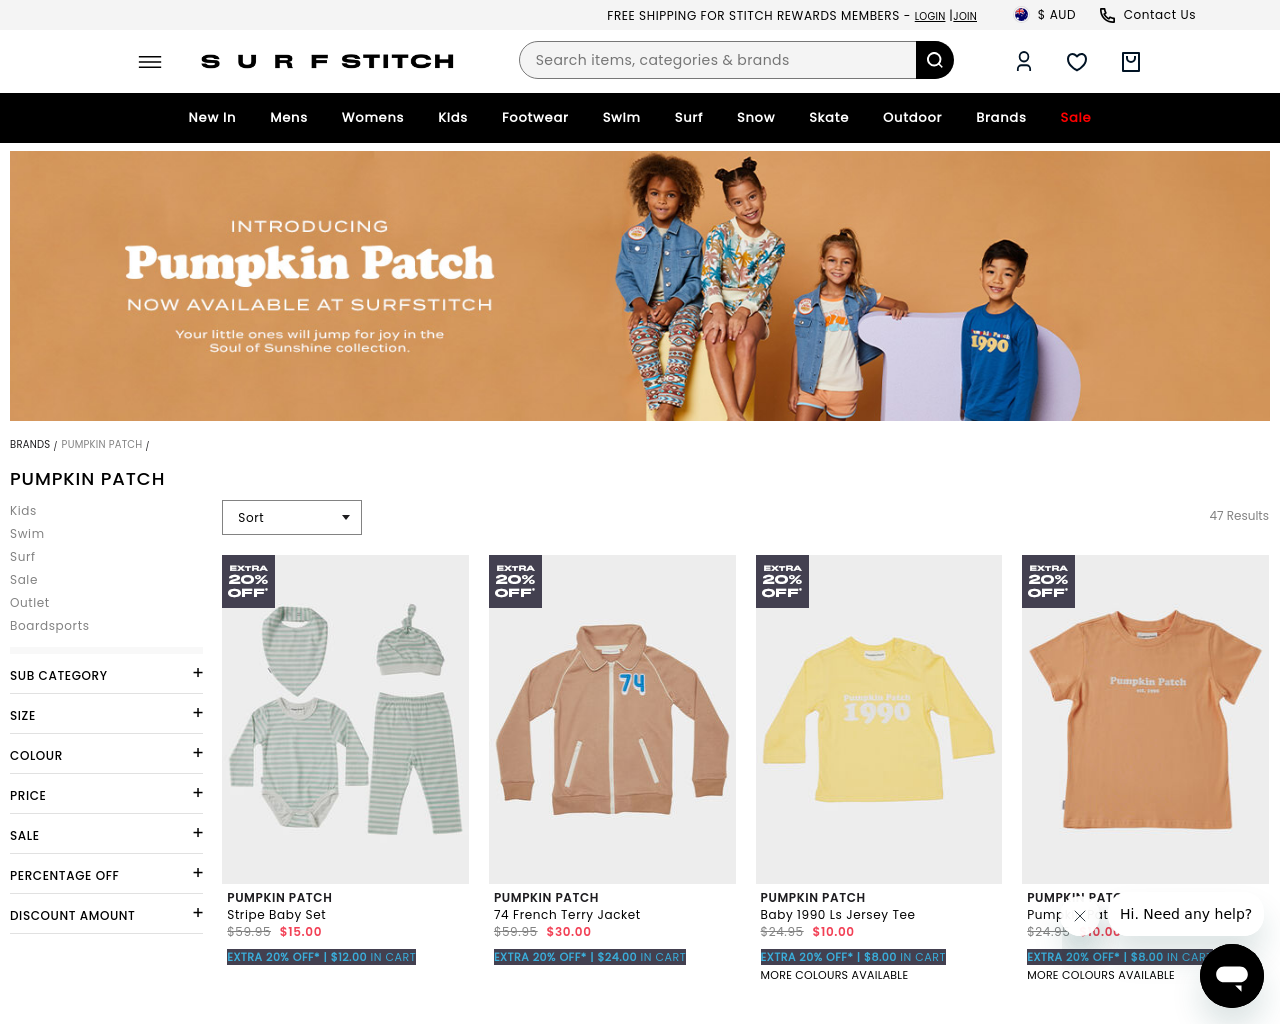 pumpkinpatch.com.au